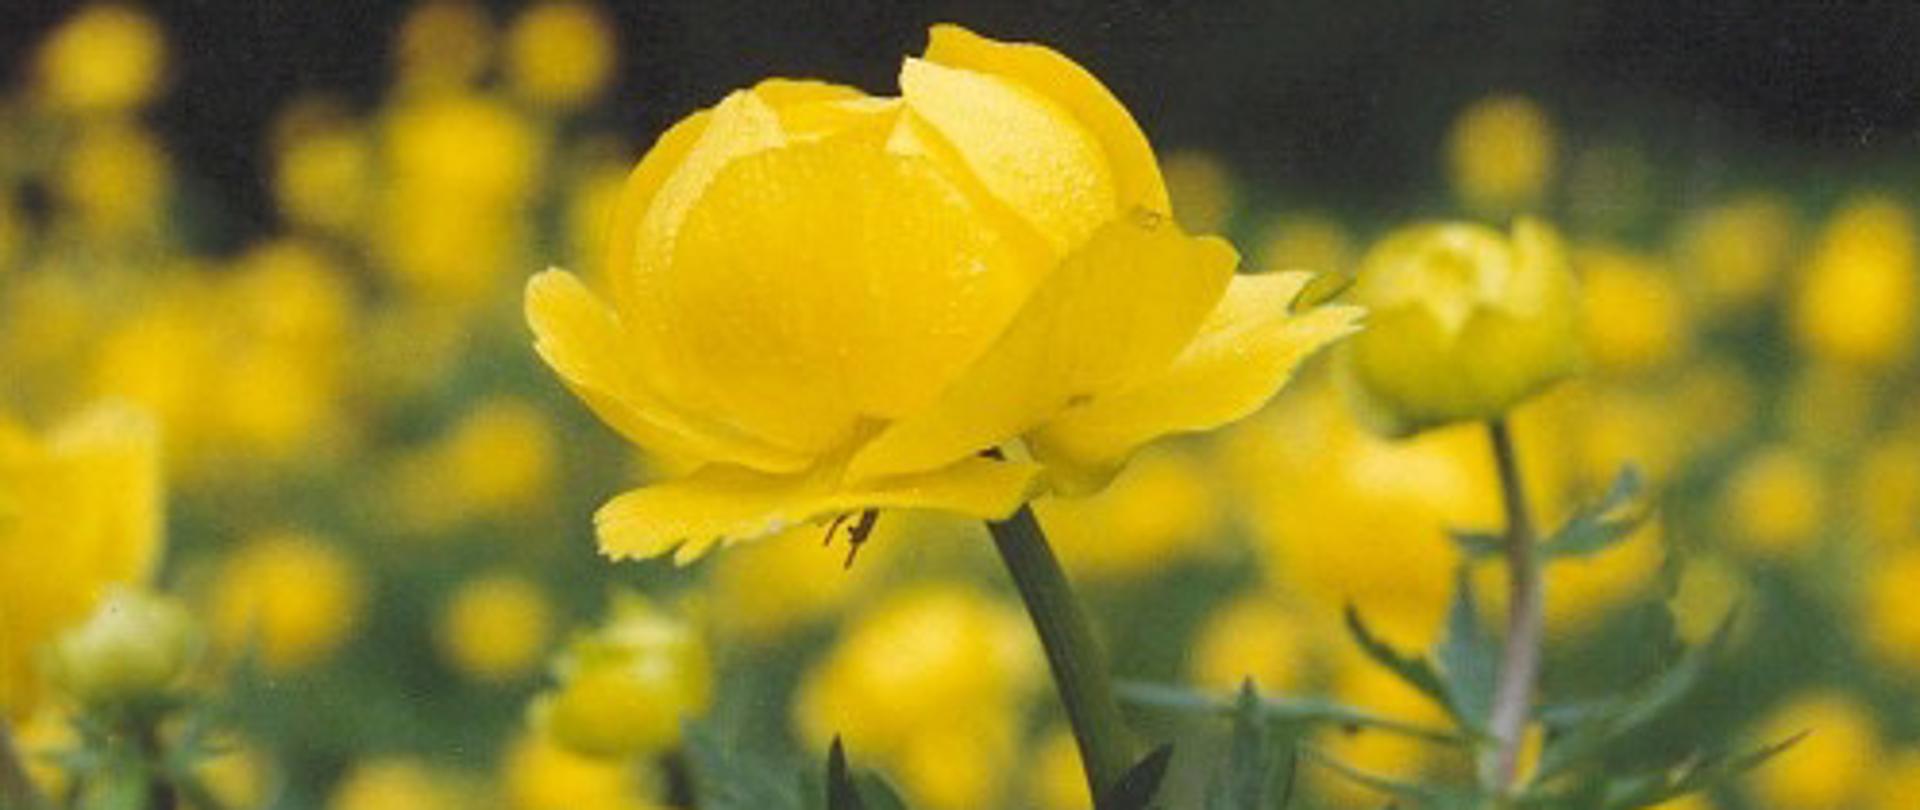 Żółte kwiaty pełnika europejskiego na pierwszym planie, w tle rozmazane pąki wielu roślin tego gatunku